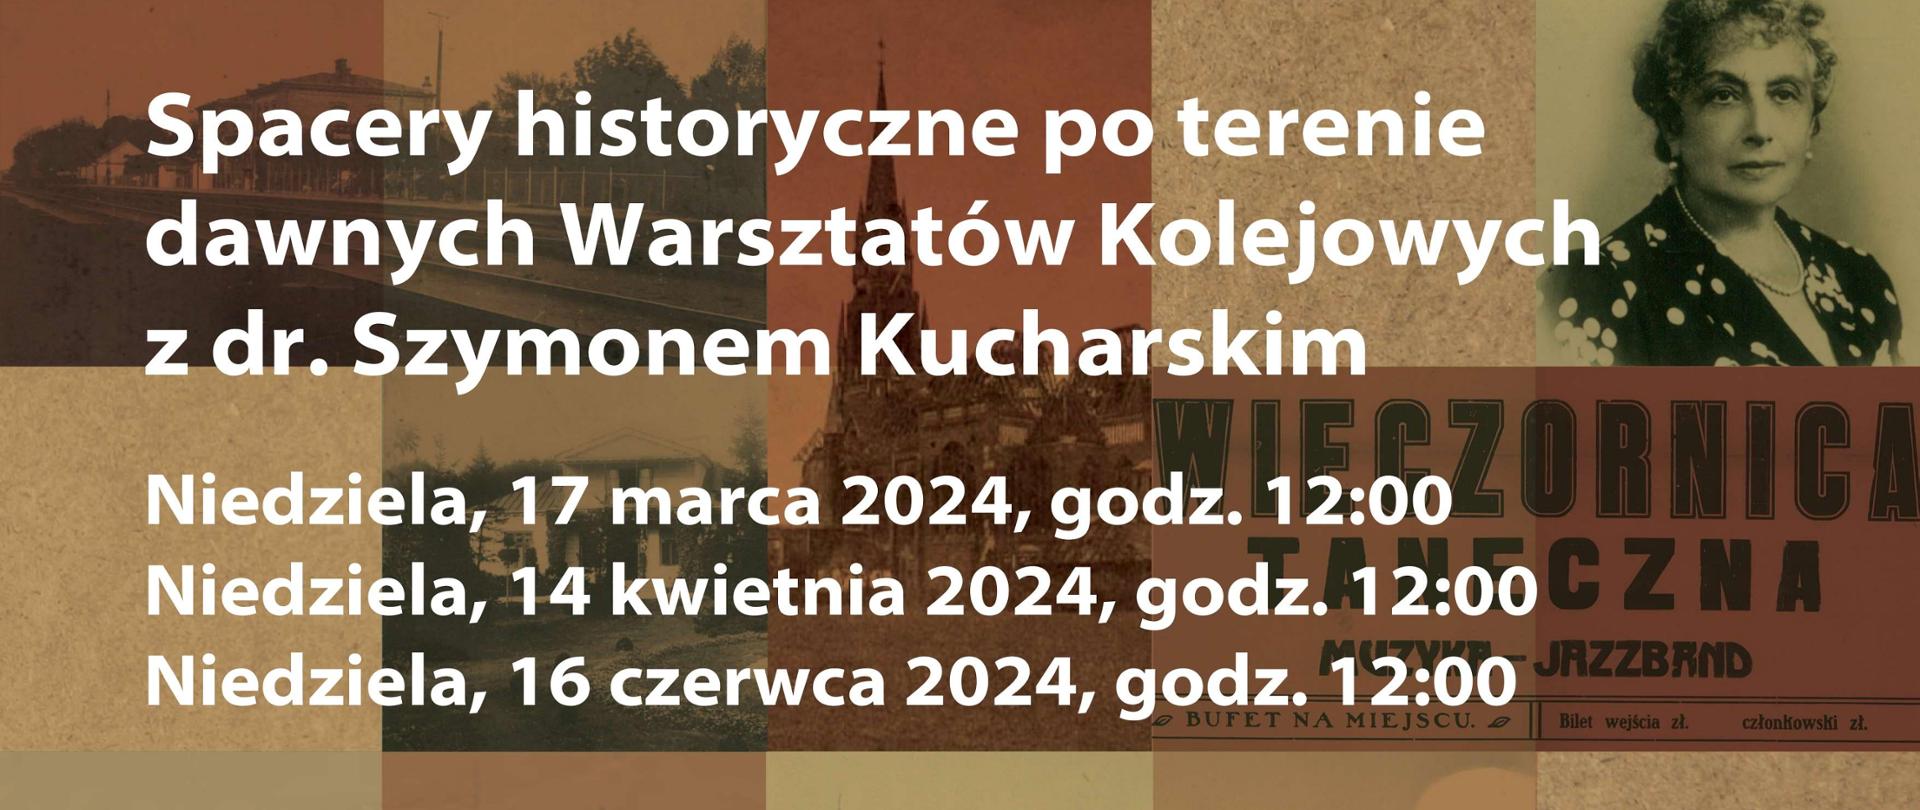 Warsztaty Kolei Warszawsko-Wiedeńskiej
– spacer historyczny po dawnych ZNTK z Szymonem Kucharskim
